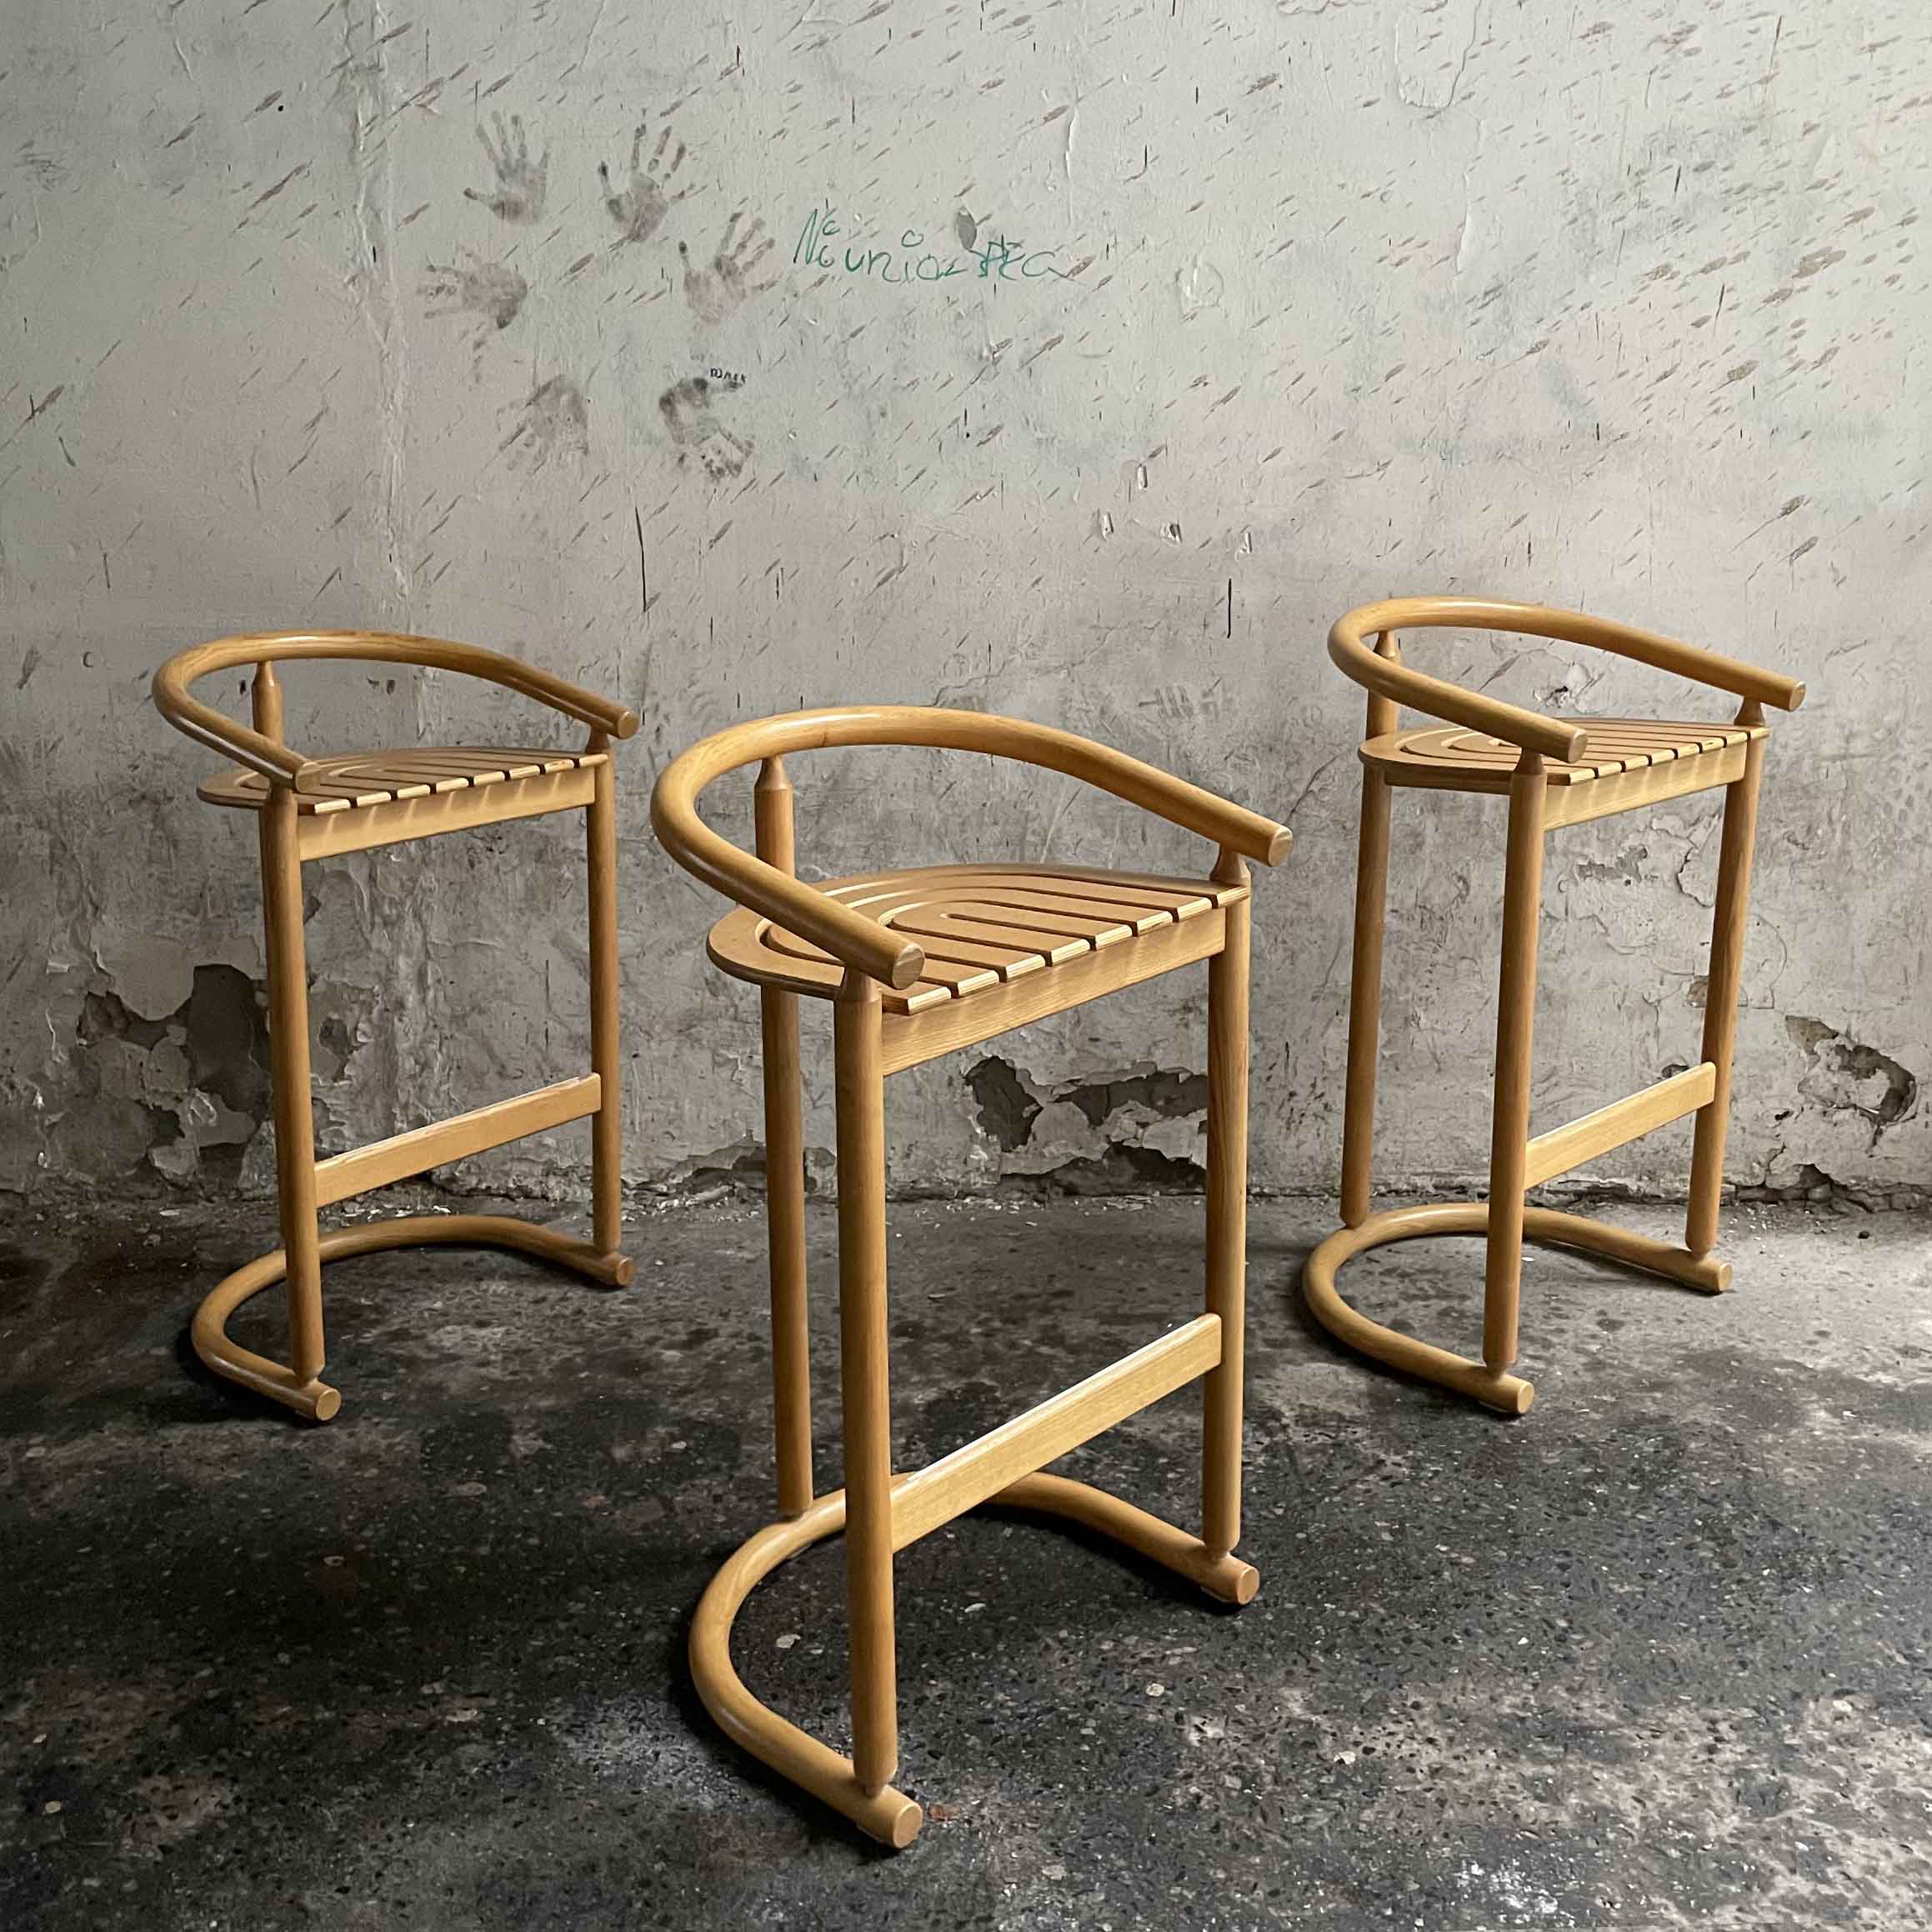 Bentwood Chairs by Allmilmö, Germany, 1980, mid century bar stools vintage warszawa krzeslarz antyki